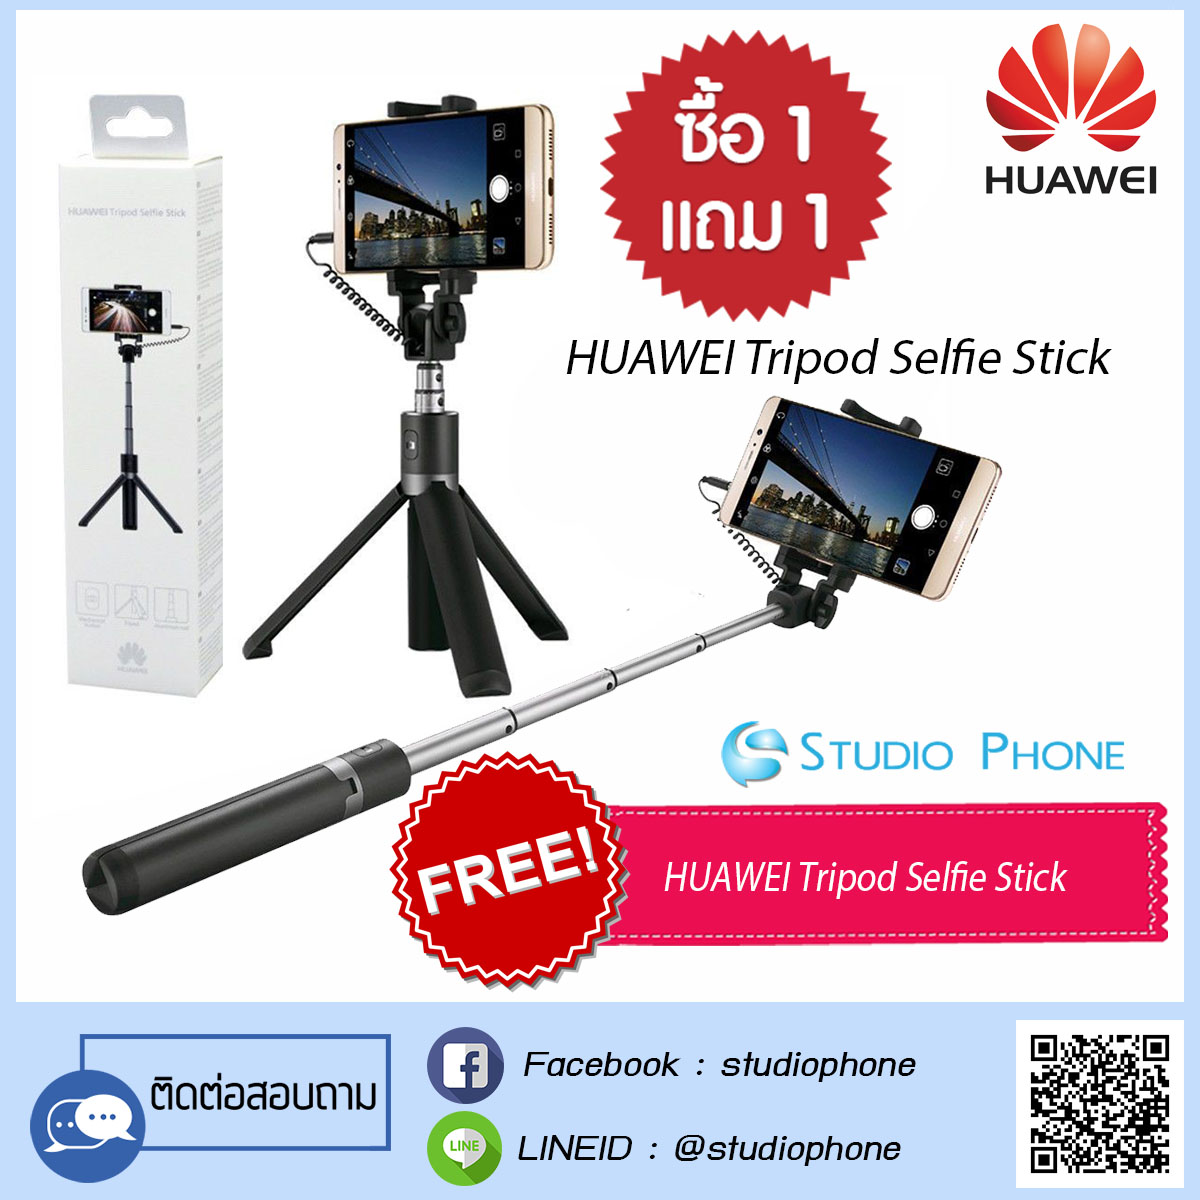 HUAWEI Tripod Selfie Stick ของแท้จากศูนย์ ซื้อ 1 แถม 1 (ฟรี HUAWEI Tripod Selfie Stick)